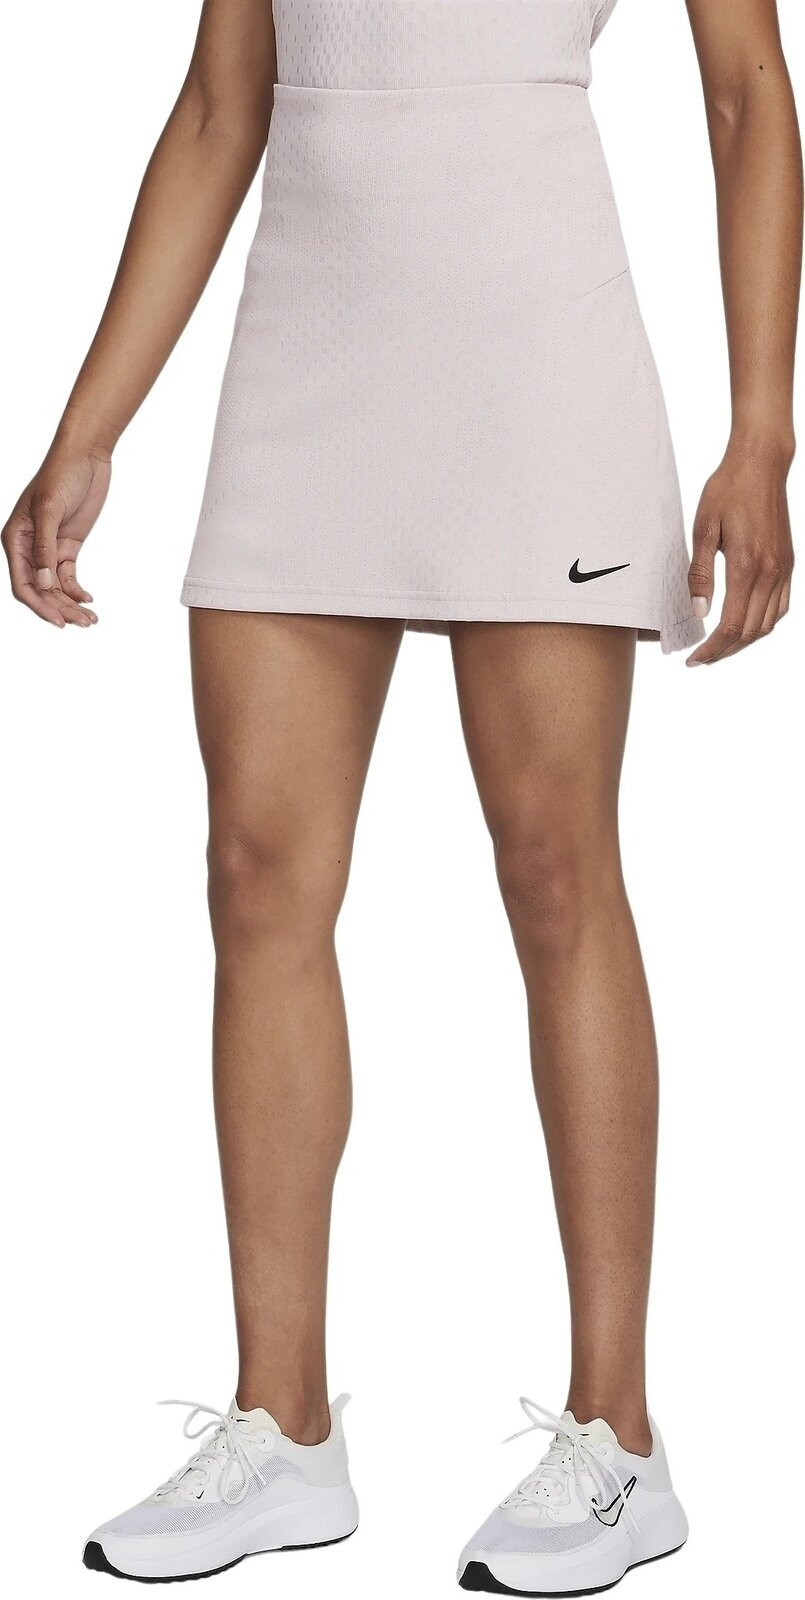 Gonne e vestiti Nike Dri-Fit ADV Tour Skirt Platinum Violet/Black XS